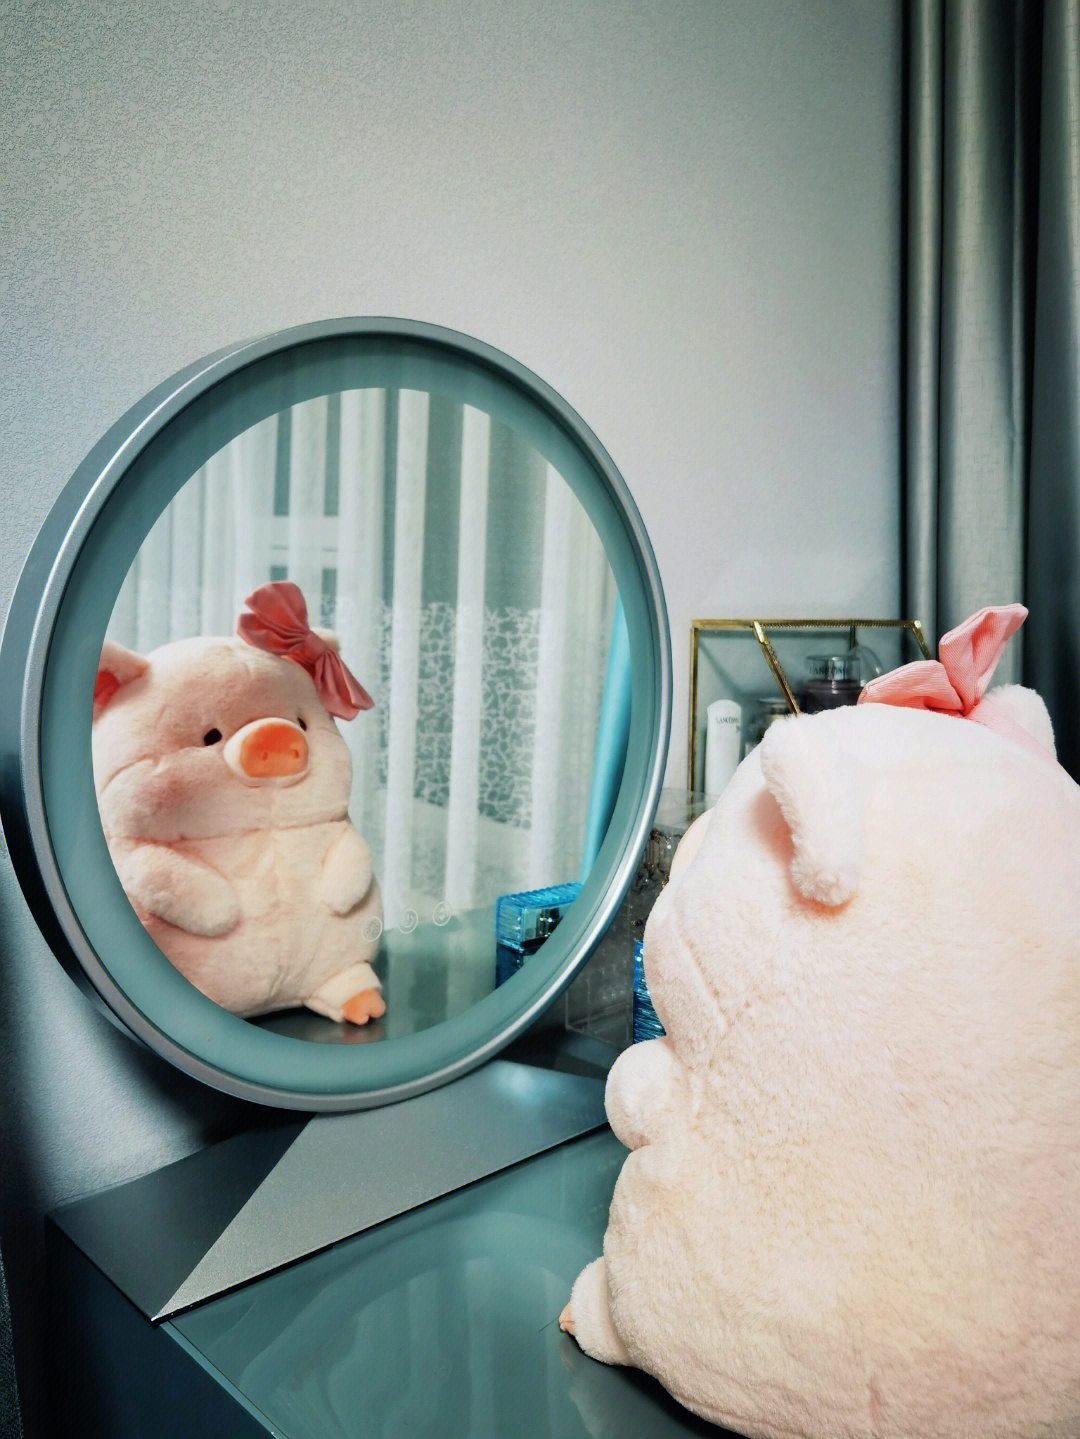 猪照镜子的表情包图片